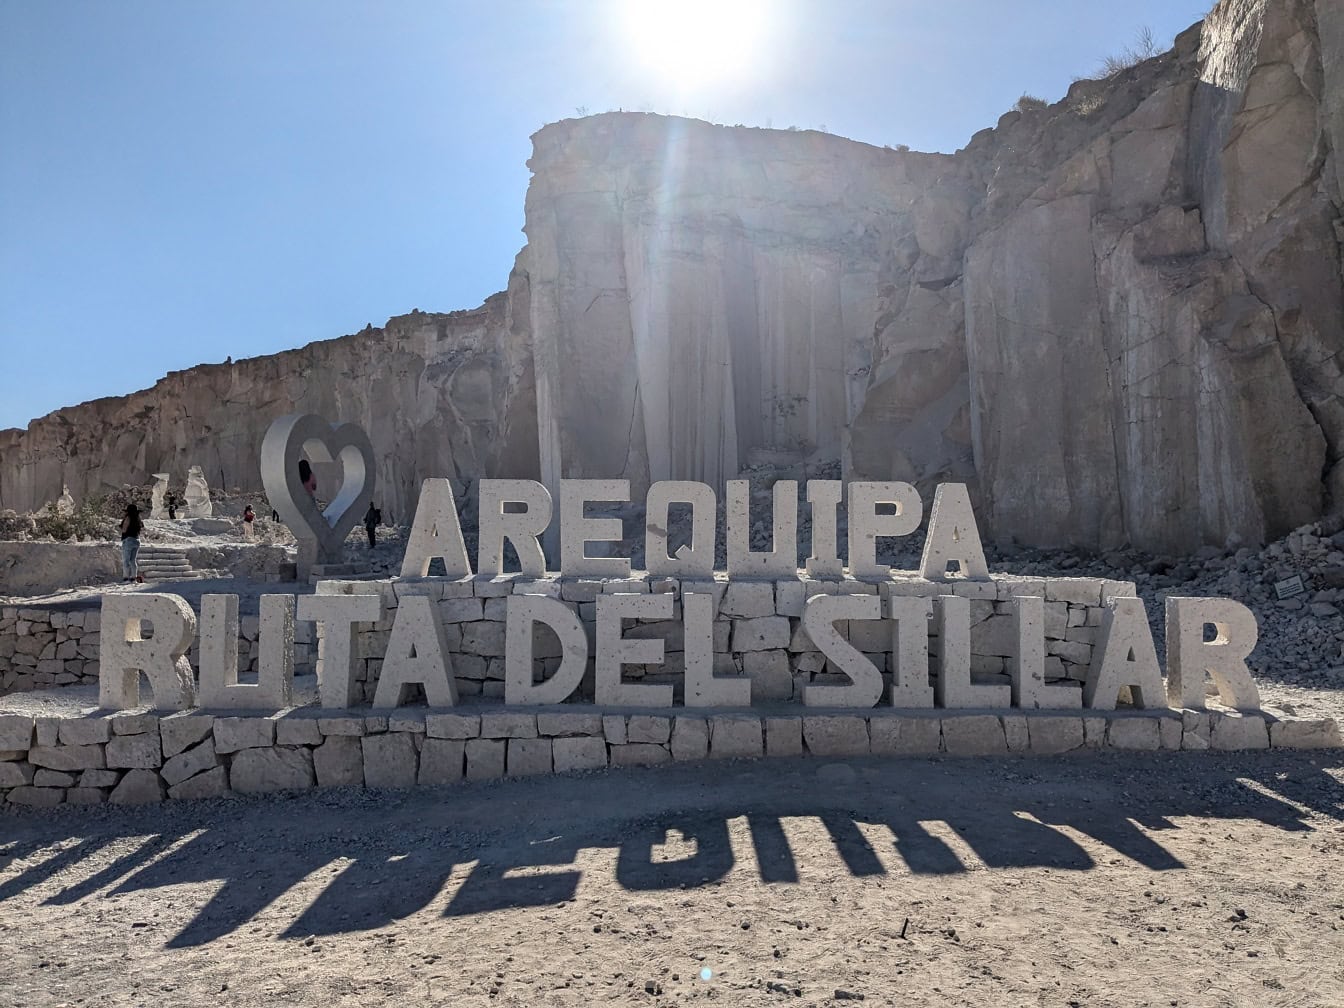 Semn mare de piatră din Peru cu o inscripție a lui Arequipa Ruta Del Sillar